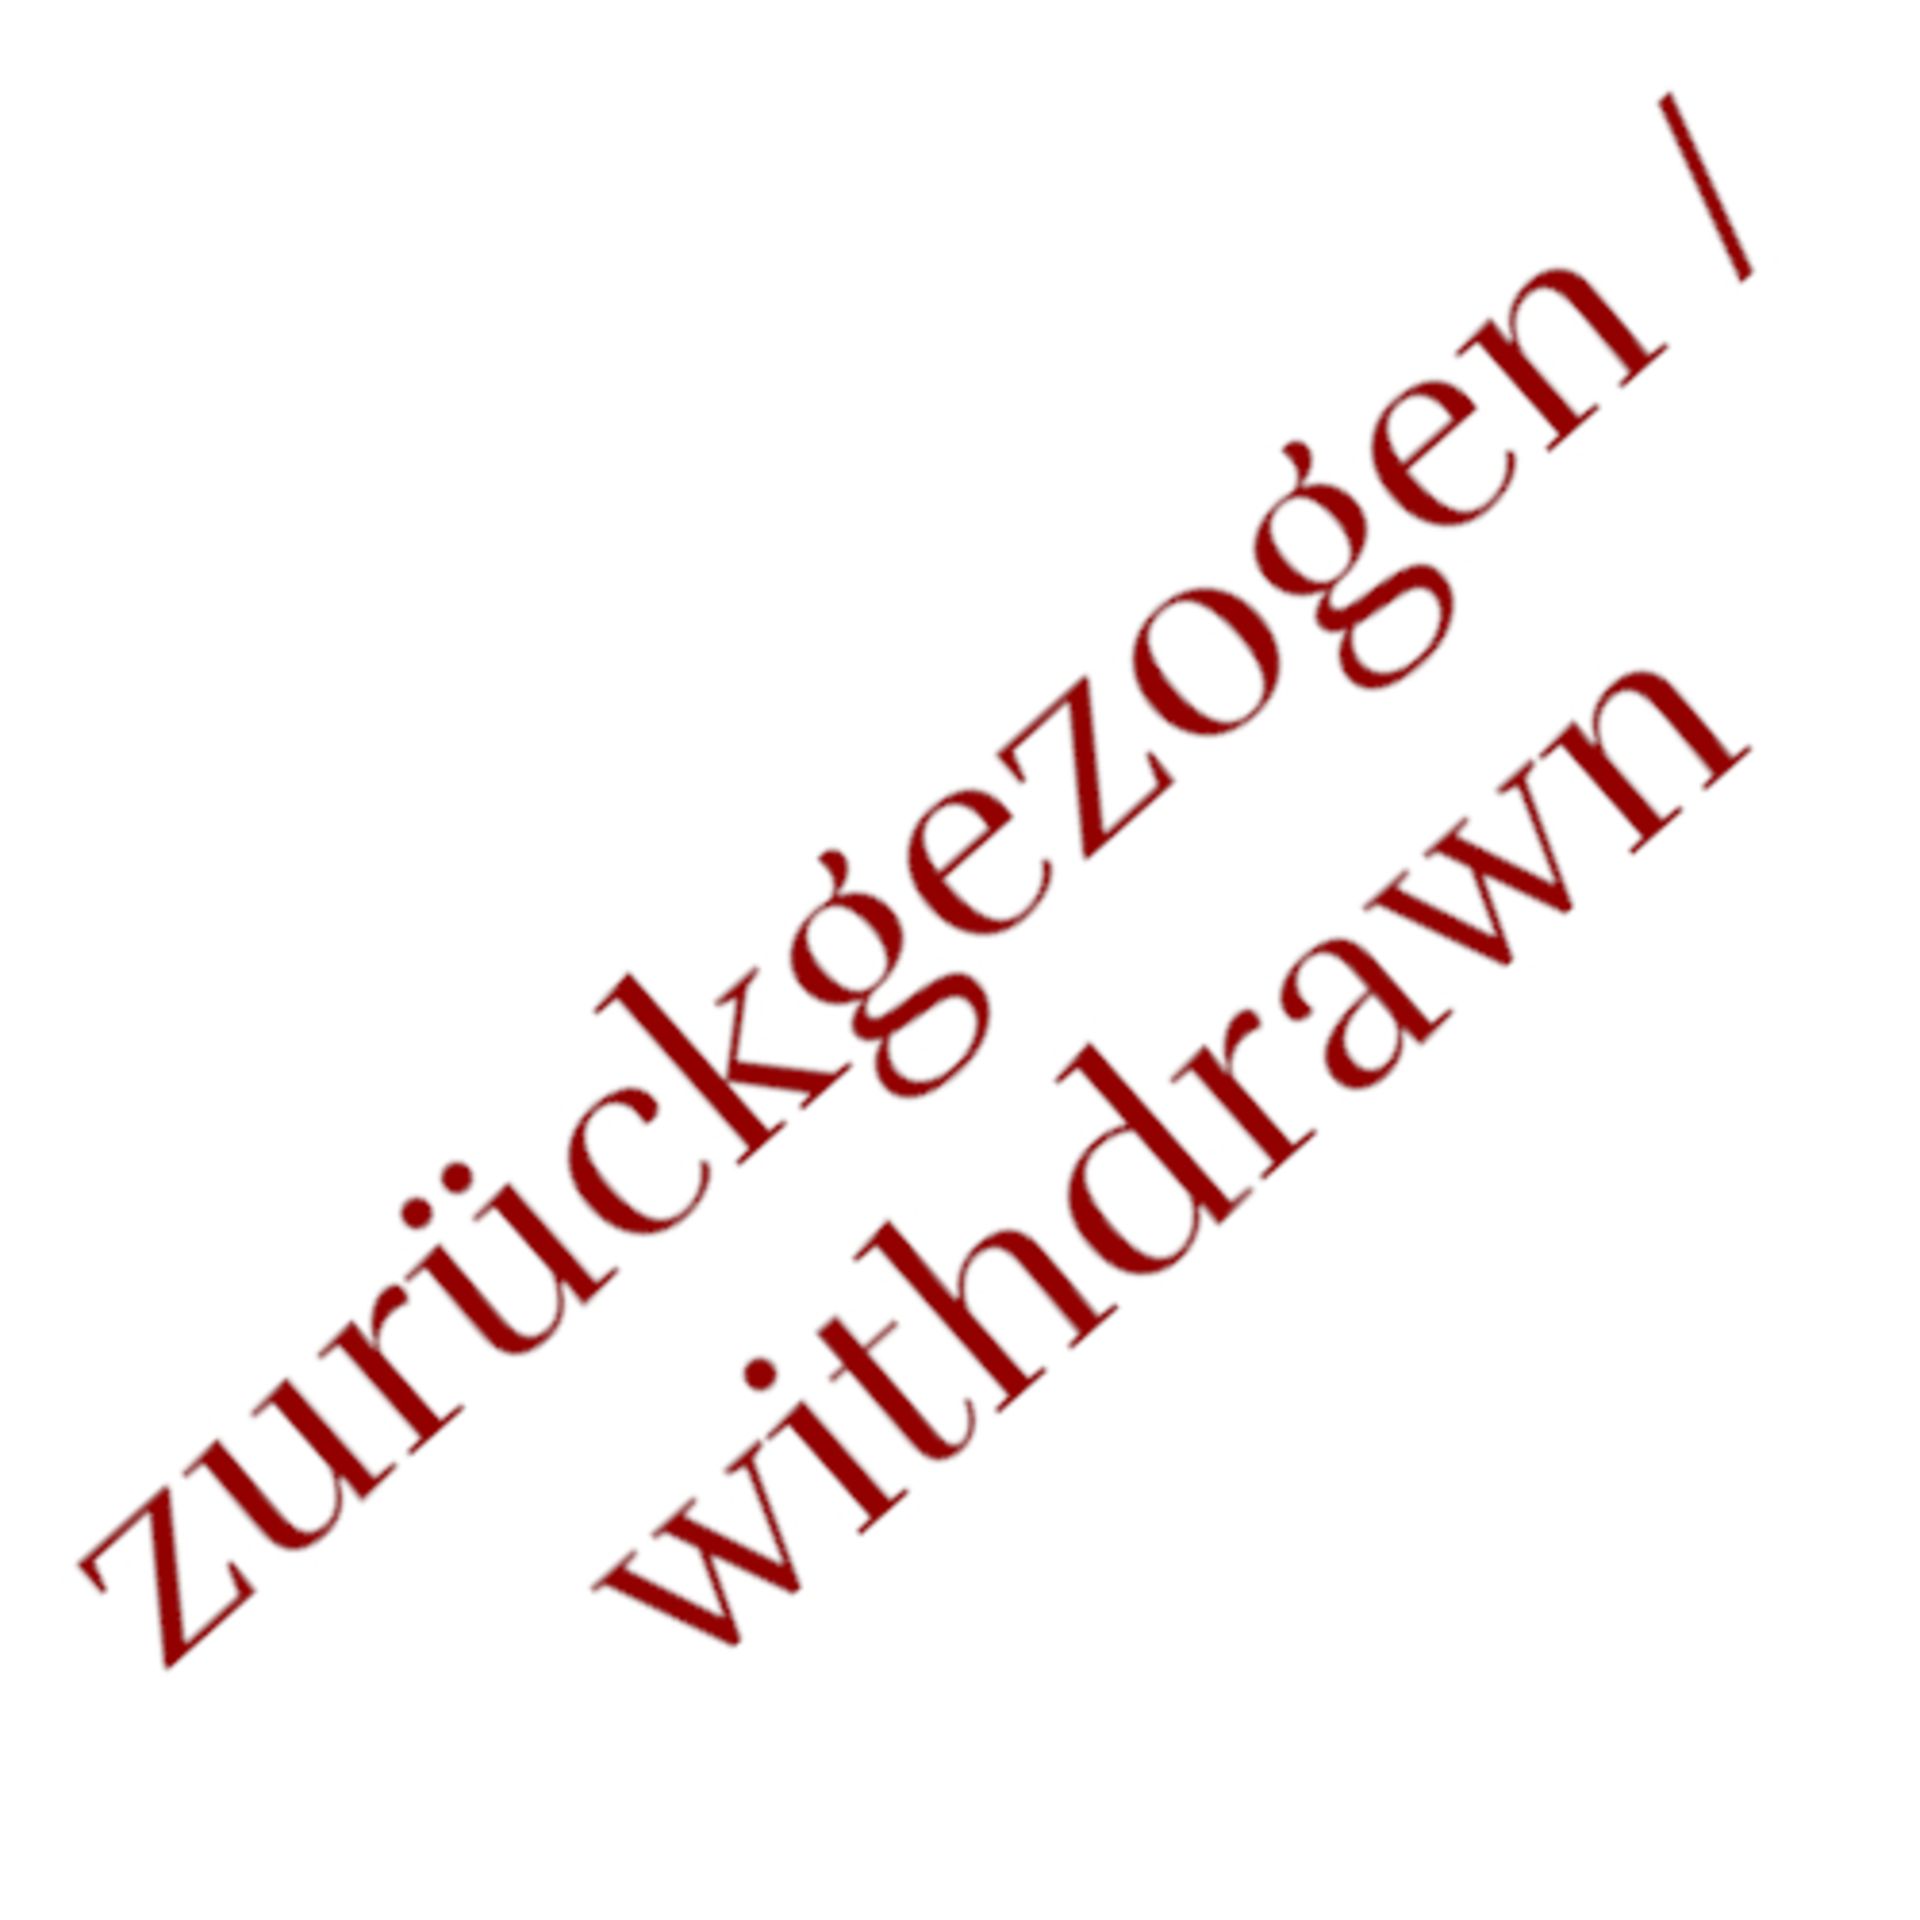 zurückgezogen/ withdrawn